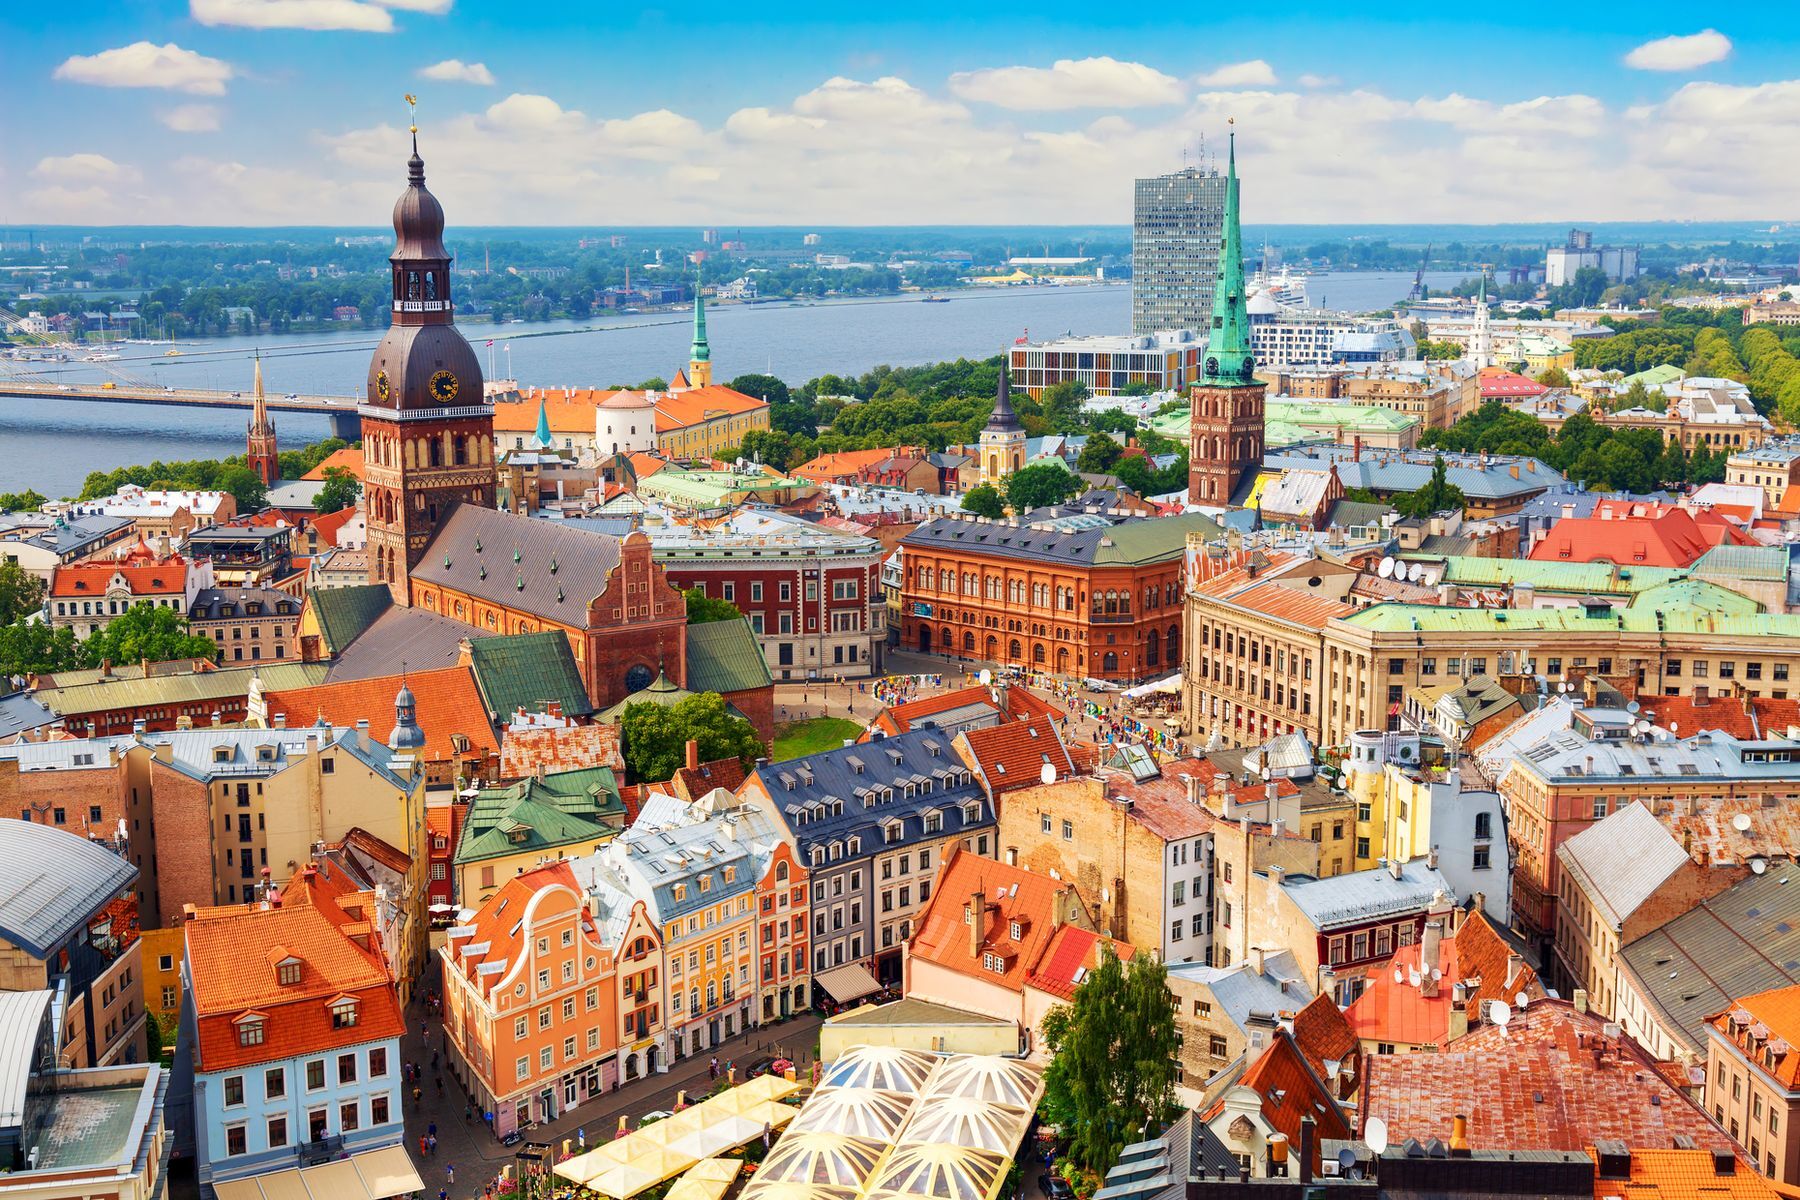 <p>Située sur la mer Baltique et sur les rives de la rivière Daugava, <a href="https://www.britannica.com/place/Riga">Riga</a> a d’abord vu le jour en tant que port commercial <a href="https://www.britannica.com/place/Riga">à la fin du 12<sup>e</sup> siècle</a>. En 2024, il fait bon visiter à pied la capitale de la Lettonie pour ne rien manquer de sa magnifique architecture. Alors, quoi de mieux que de le faire en s’offrant une <a href="https://www.civitatis.com/fr/riga/free-tour-riga/">excursion guidée gratuite</a>? Les <a href="https://blog.bourse-des-vols.com/10-activites-pas-cheres-a-riga-612237.html">activités abordables</a> sont nombreuses dans la cité, comme celle de se balader dans le <a href="https://www.vanupied.com/riga/quartiers-riga/quartier-du-vieux-riga-vecriga-le-centre-historique-de-la-capitale.html">centre historique de Riga</a> – nommé «Vecrīga» ou «Vieux Riga» –, un quartier économique important qui s’est développé au 19<sup>e</sup> siècle et qui est inscrit au <a href="https://whc.unesco.org/fr/list/852/">patrimoine mondial de l’UNESCO</a>. Vous y trouverez une multitude de musées, de galeries d’art et de restaurants pour tous les goûts et tous les budgets. N’oubliez pas de faire un détour par le jardin des Bastejkalns, où se trouve le <a href="https://www.routard.com/guide_voyage_lieu/10456-monument_de_la_liberte.htm">monument de la Liberté</a>, sculpté de <a href="https://www.petitfute.com/v39070-riga/c1173-visites-points-d-interet/c937-monuments/56207-monument-de-la-liberte-brivibas-piemineklis.html">1931 à 1935</a>. Sa construction a été possible grâce aux dons de la population, et ce symbole de liberté, d’indépendance et de souveraineté compte énormément aux yeux des Lettons.</p>